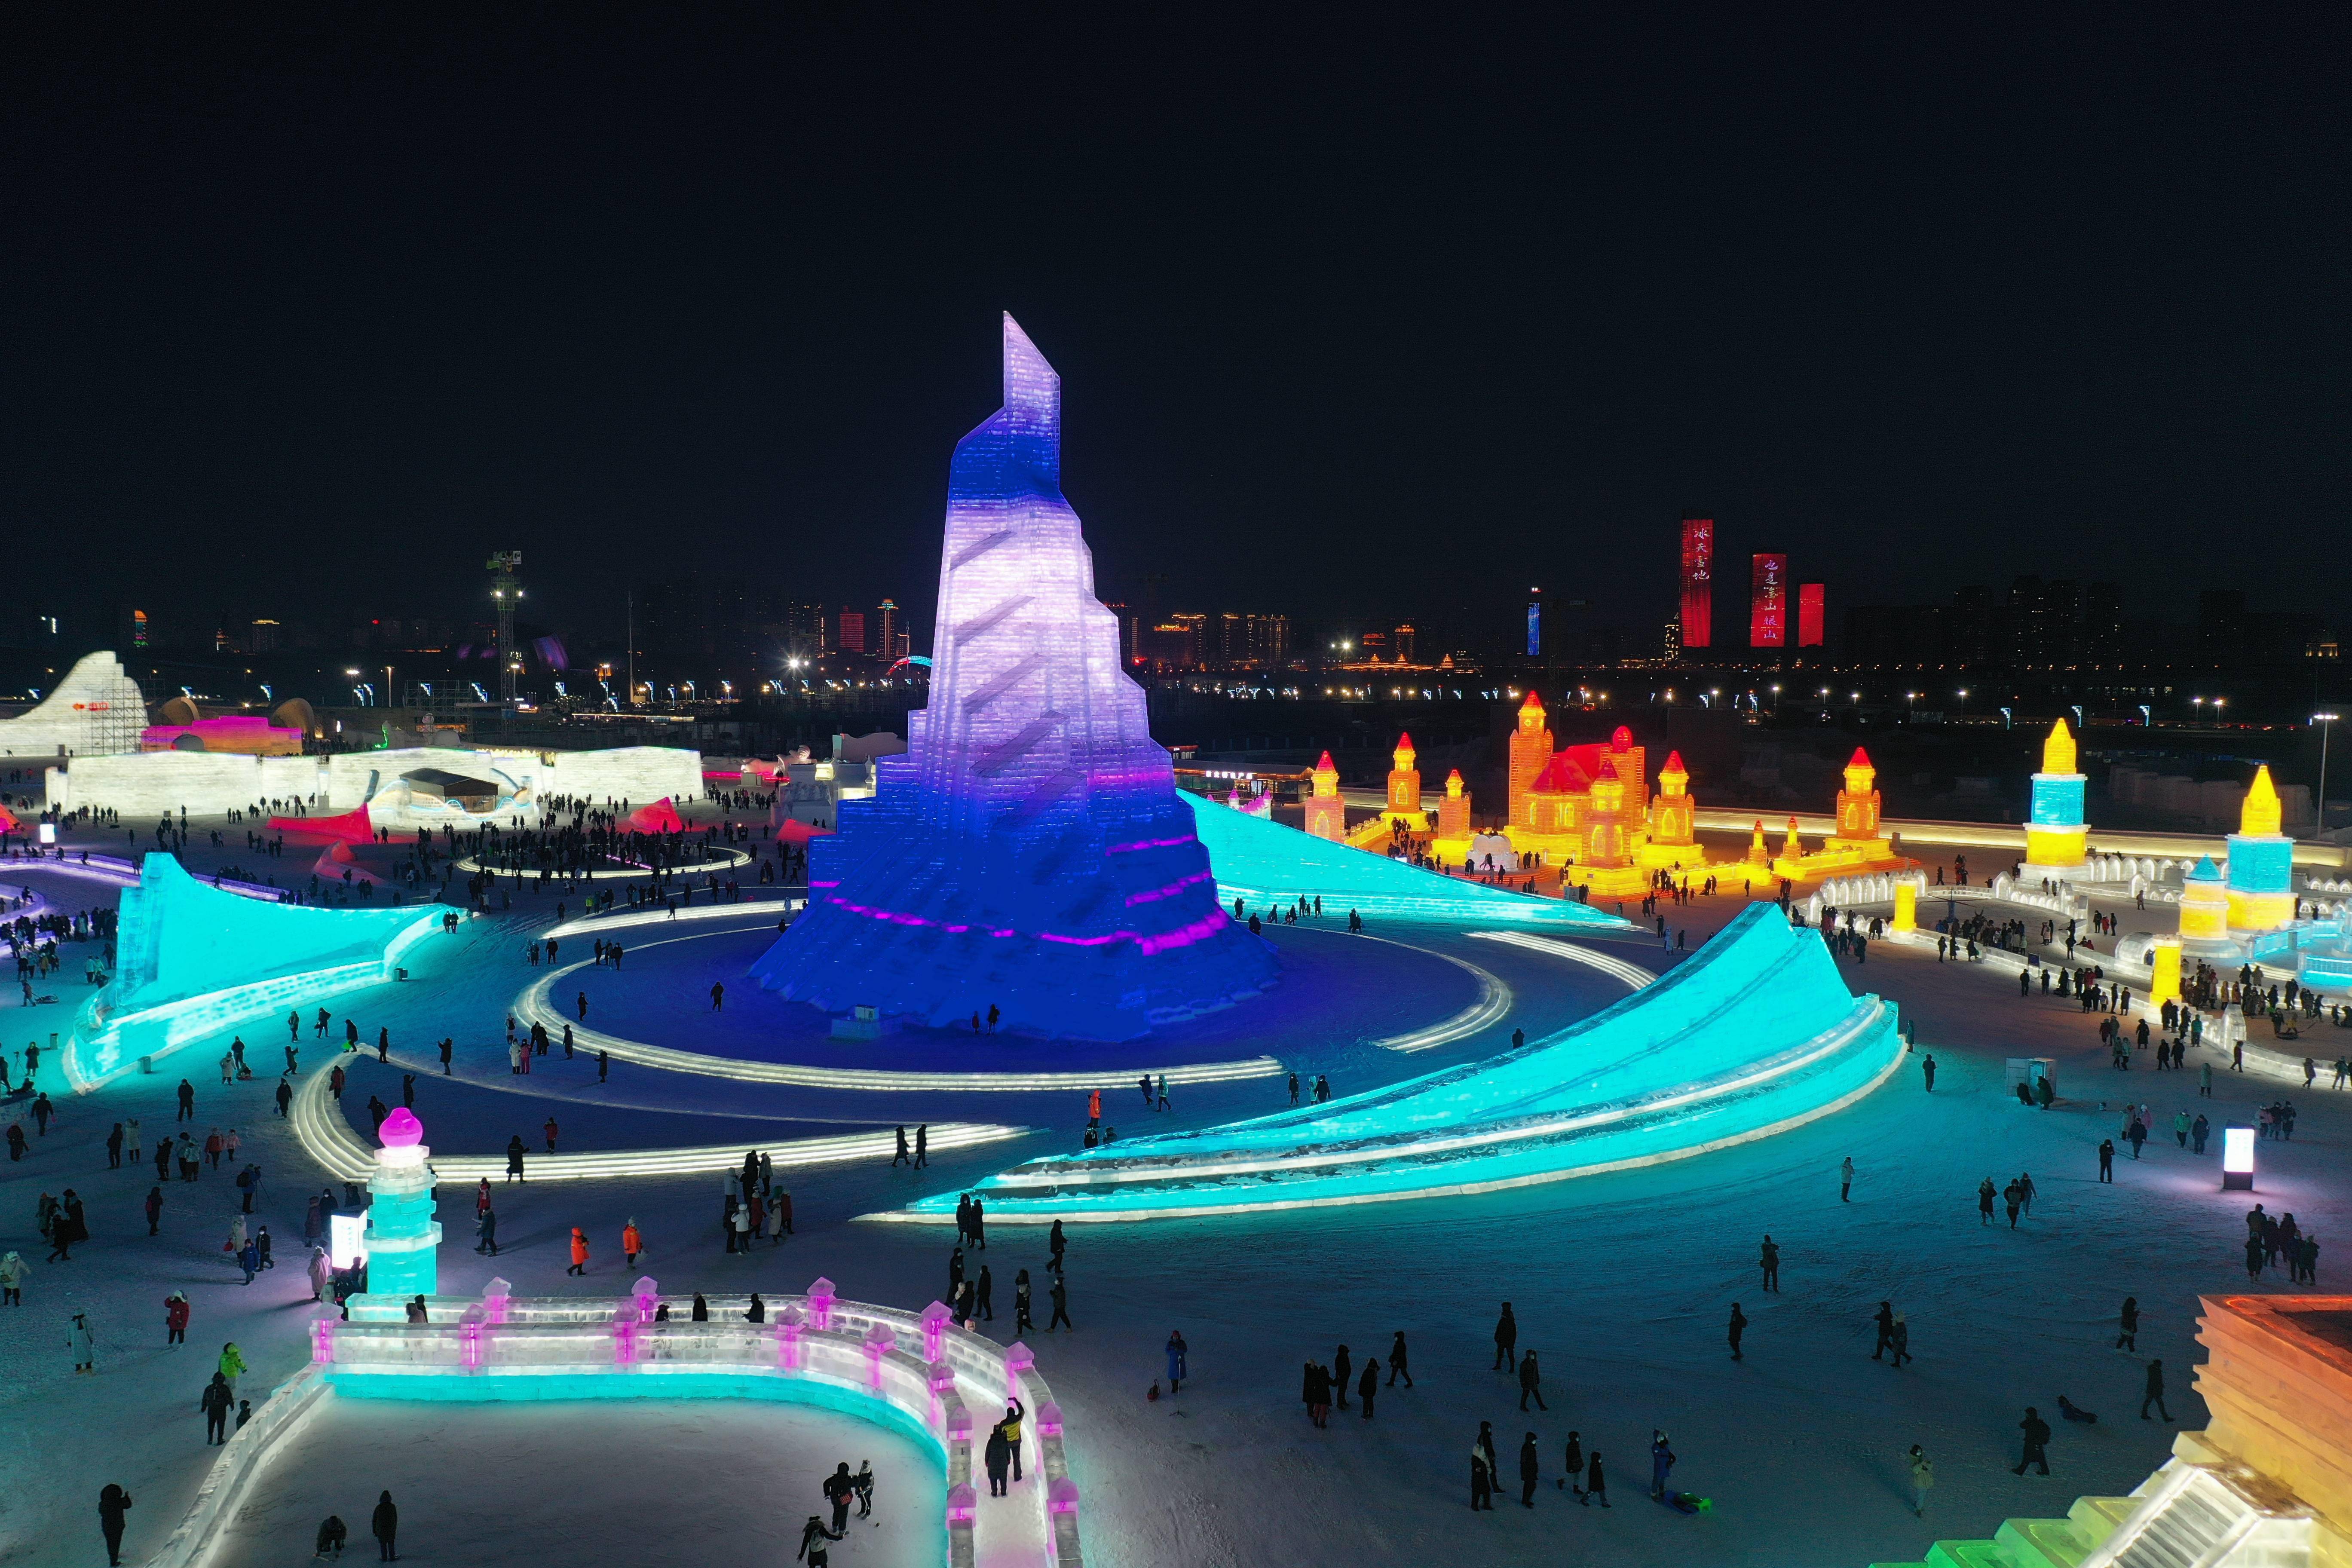 哈尔滨冰雪大世界2021图片